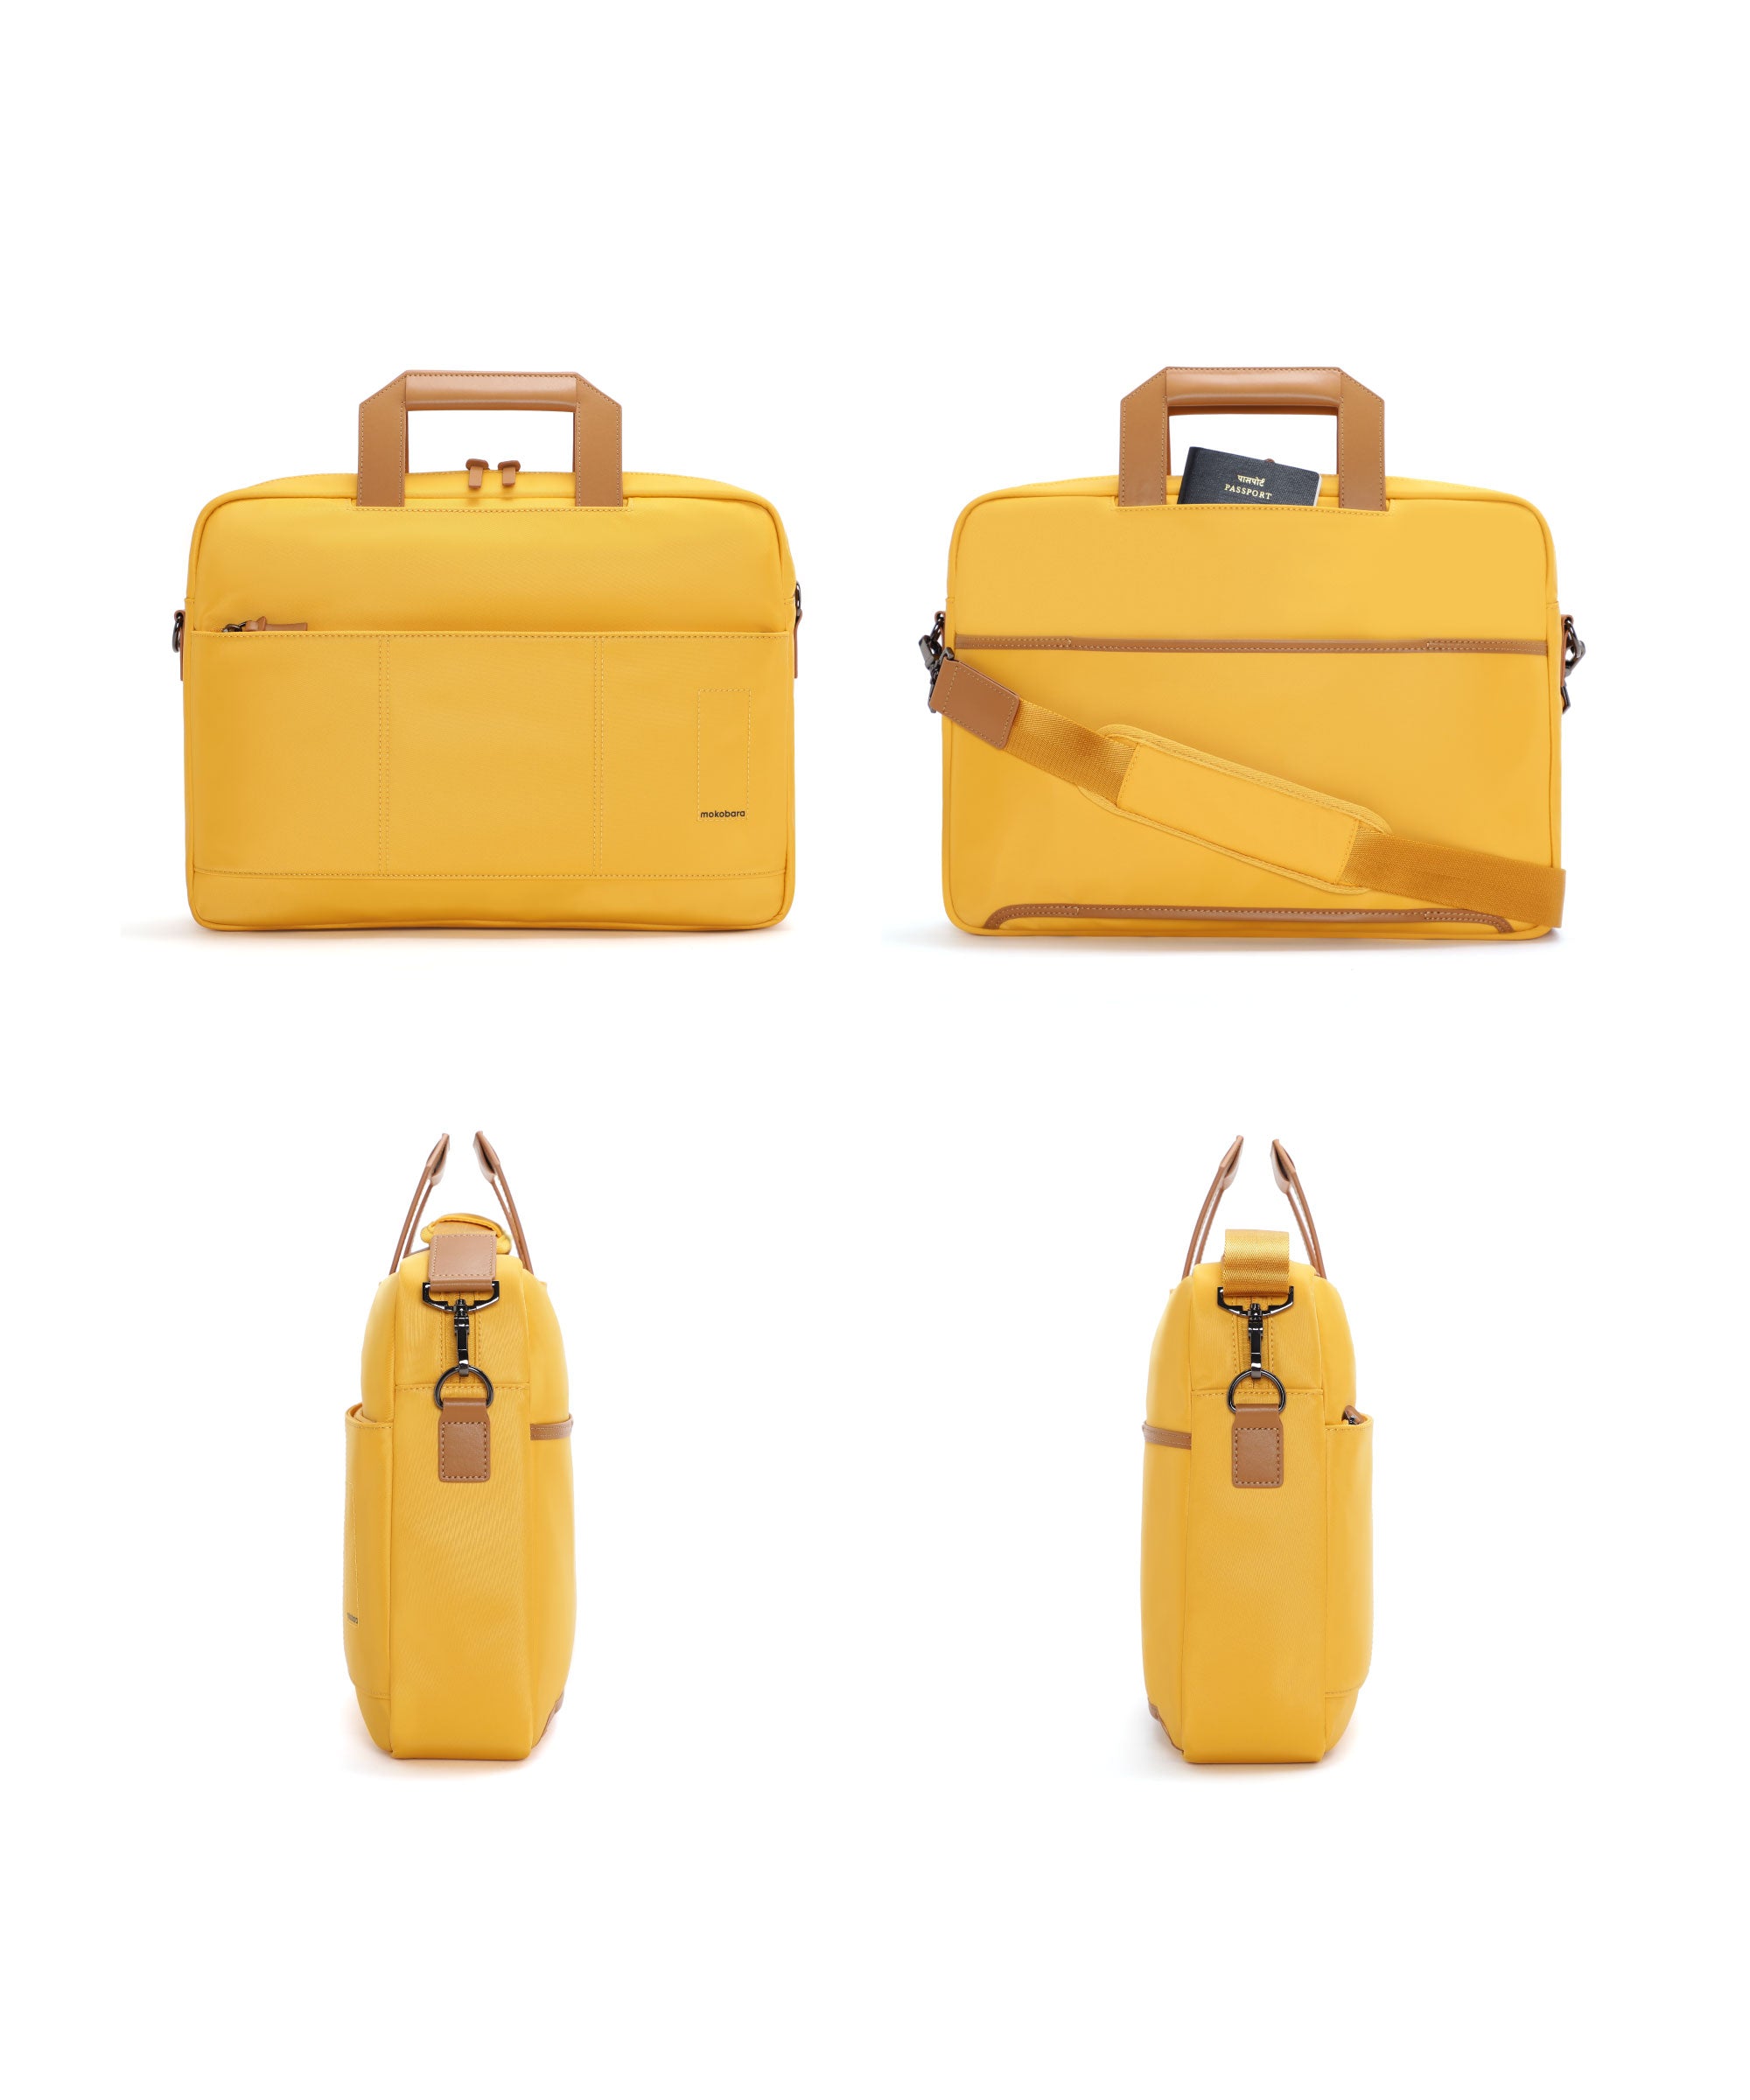 Color_Enough Yellow | The Briefcase